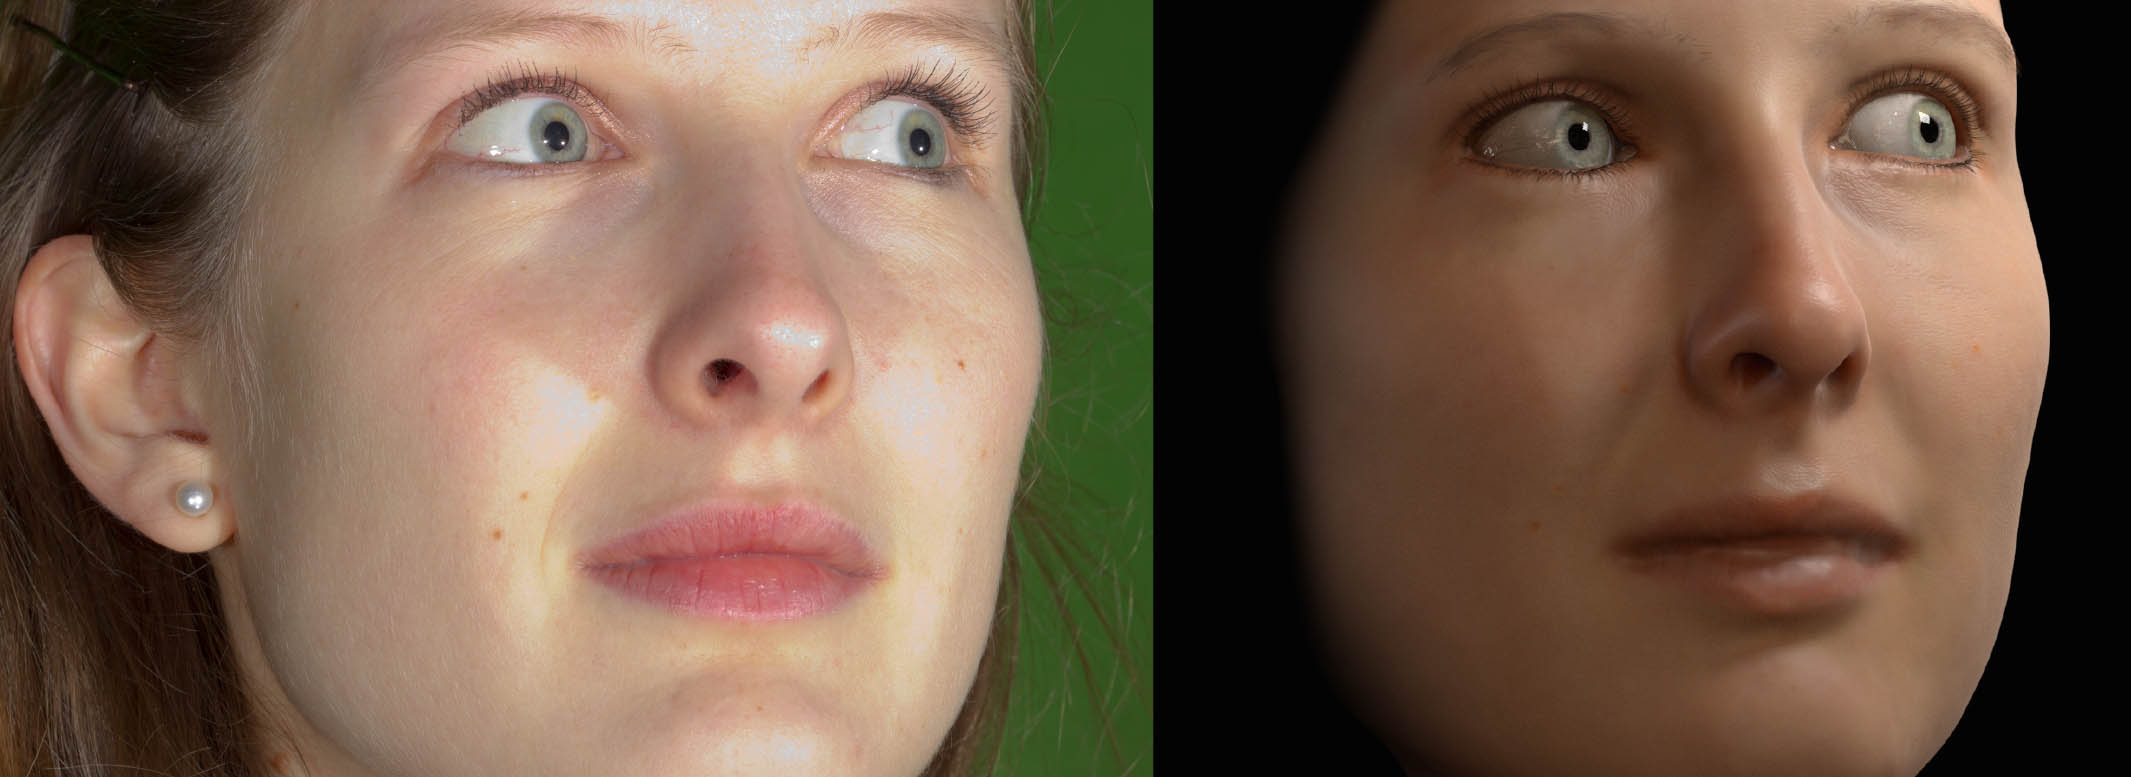 El software se puede utilizar con escáneres faciales. Fuente: Disney Research.